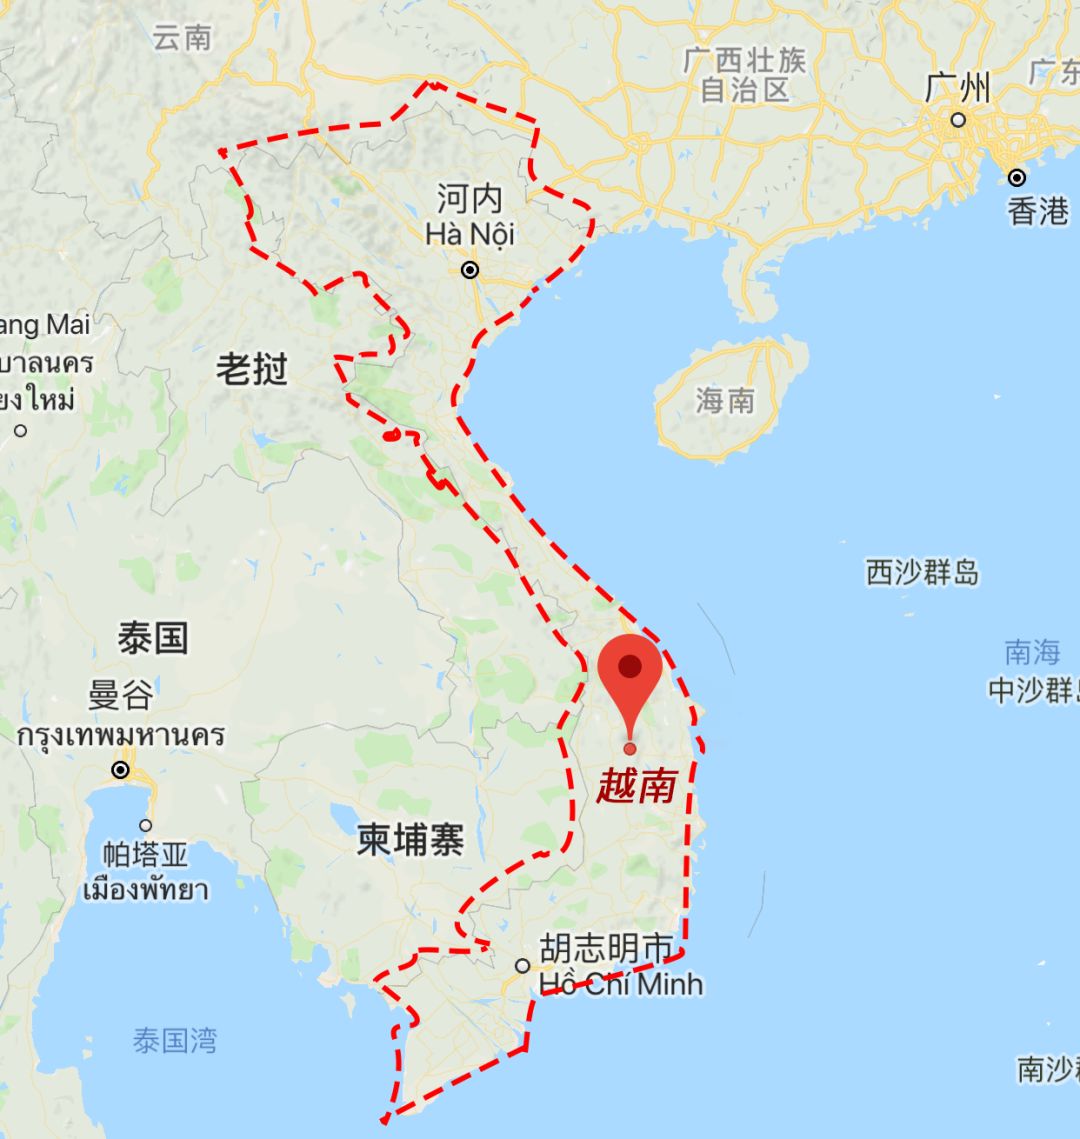 越南地理位置图 图片来自@google